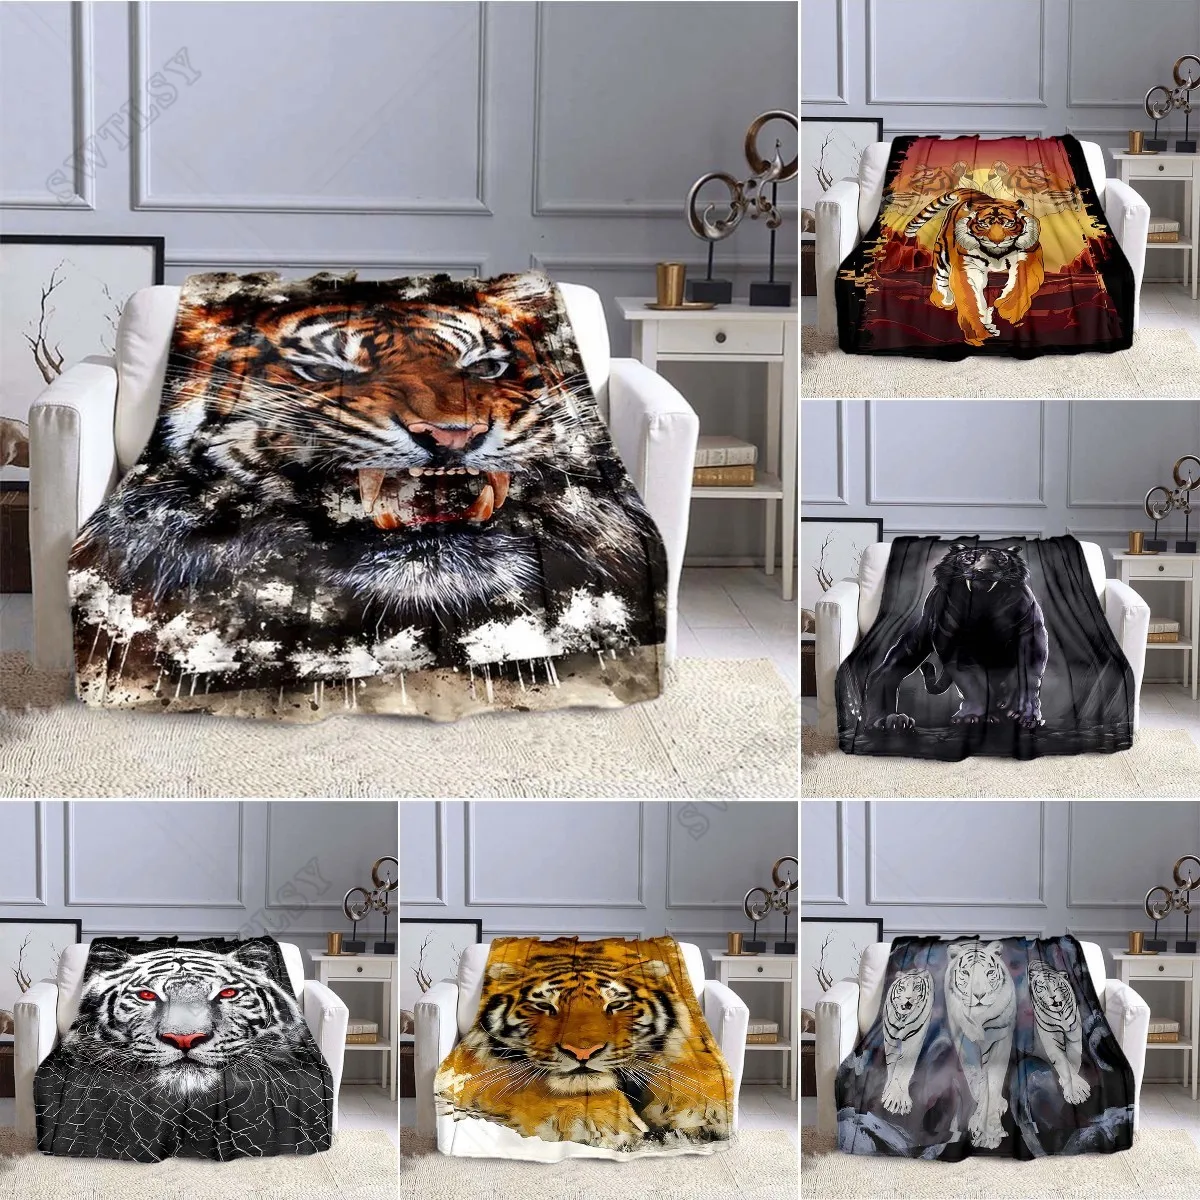 

Фланелевое Одеяло с 3D рисунком тигра, дикое Фланелевое покрывало, супермягкое легкое теплое одеяло королевского размера для гостиной, дивана